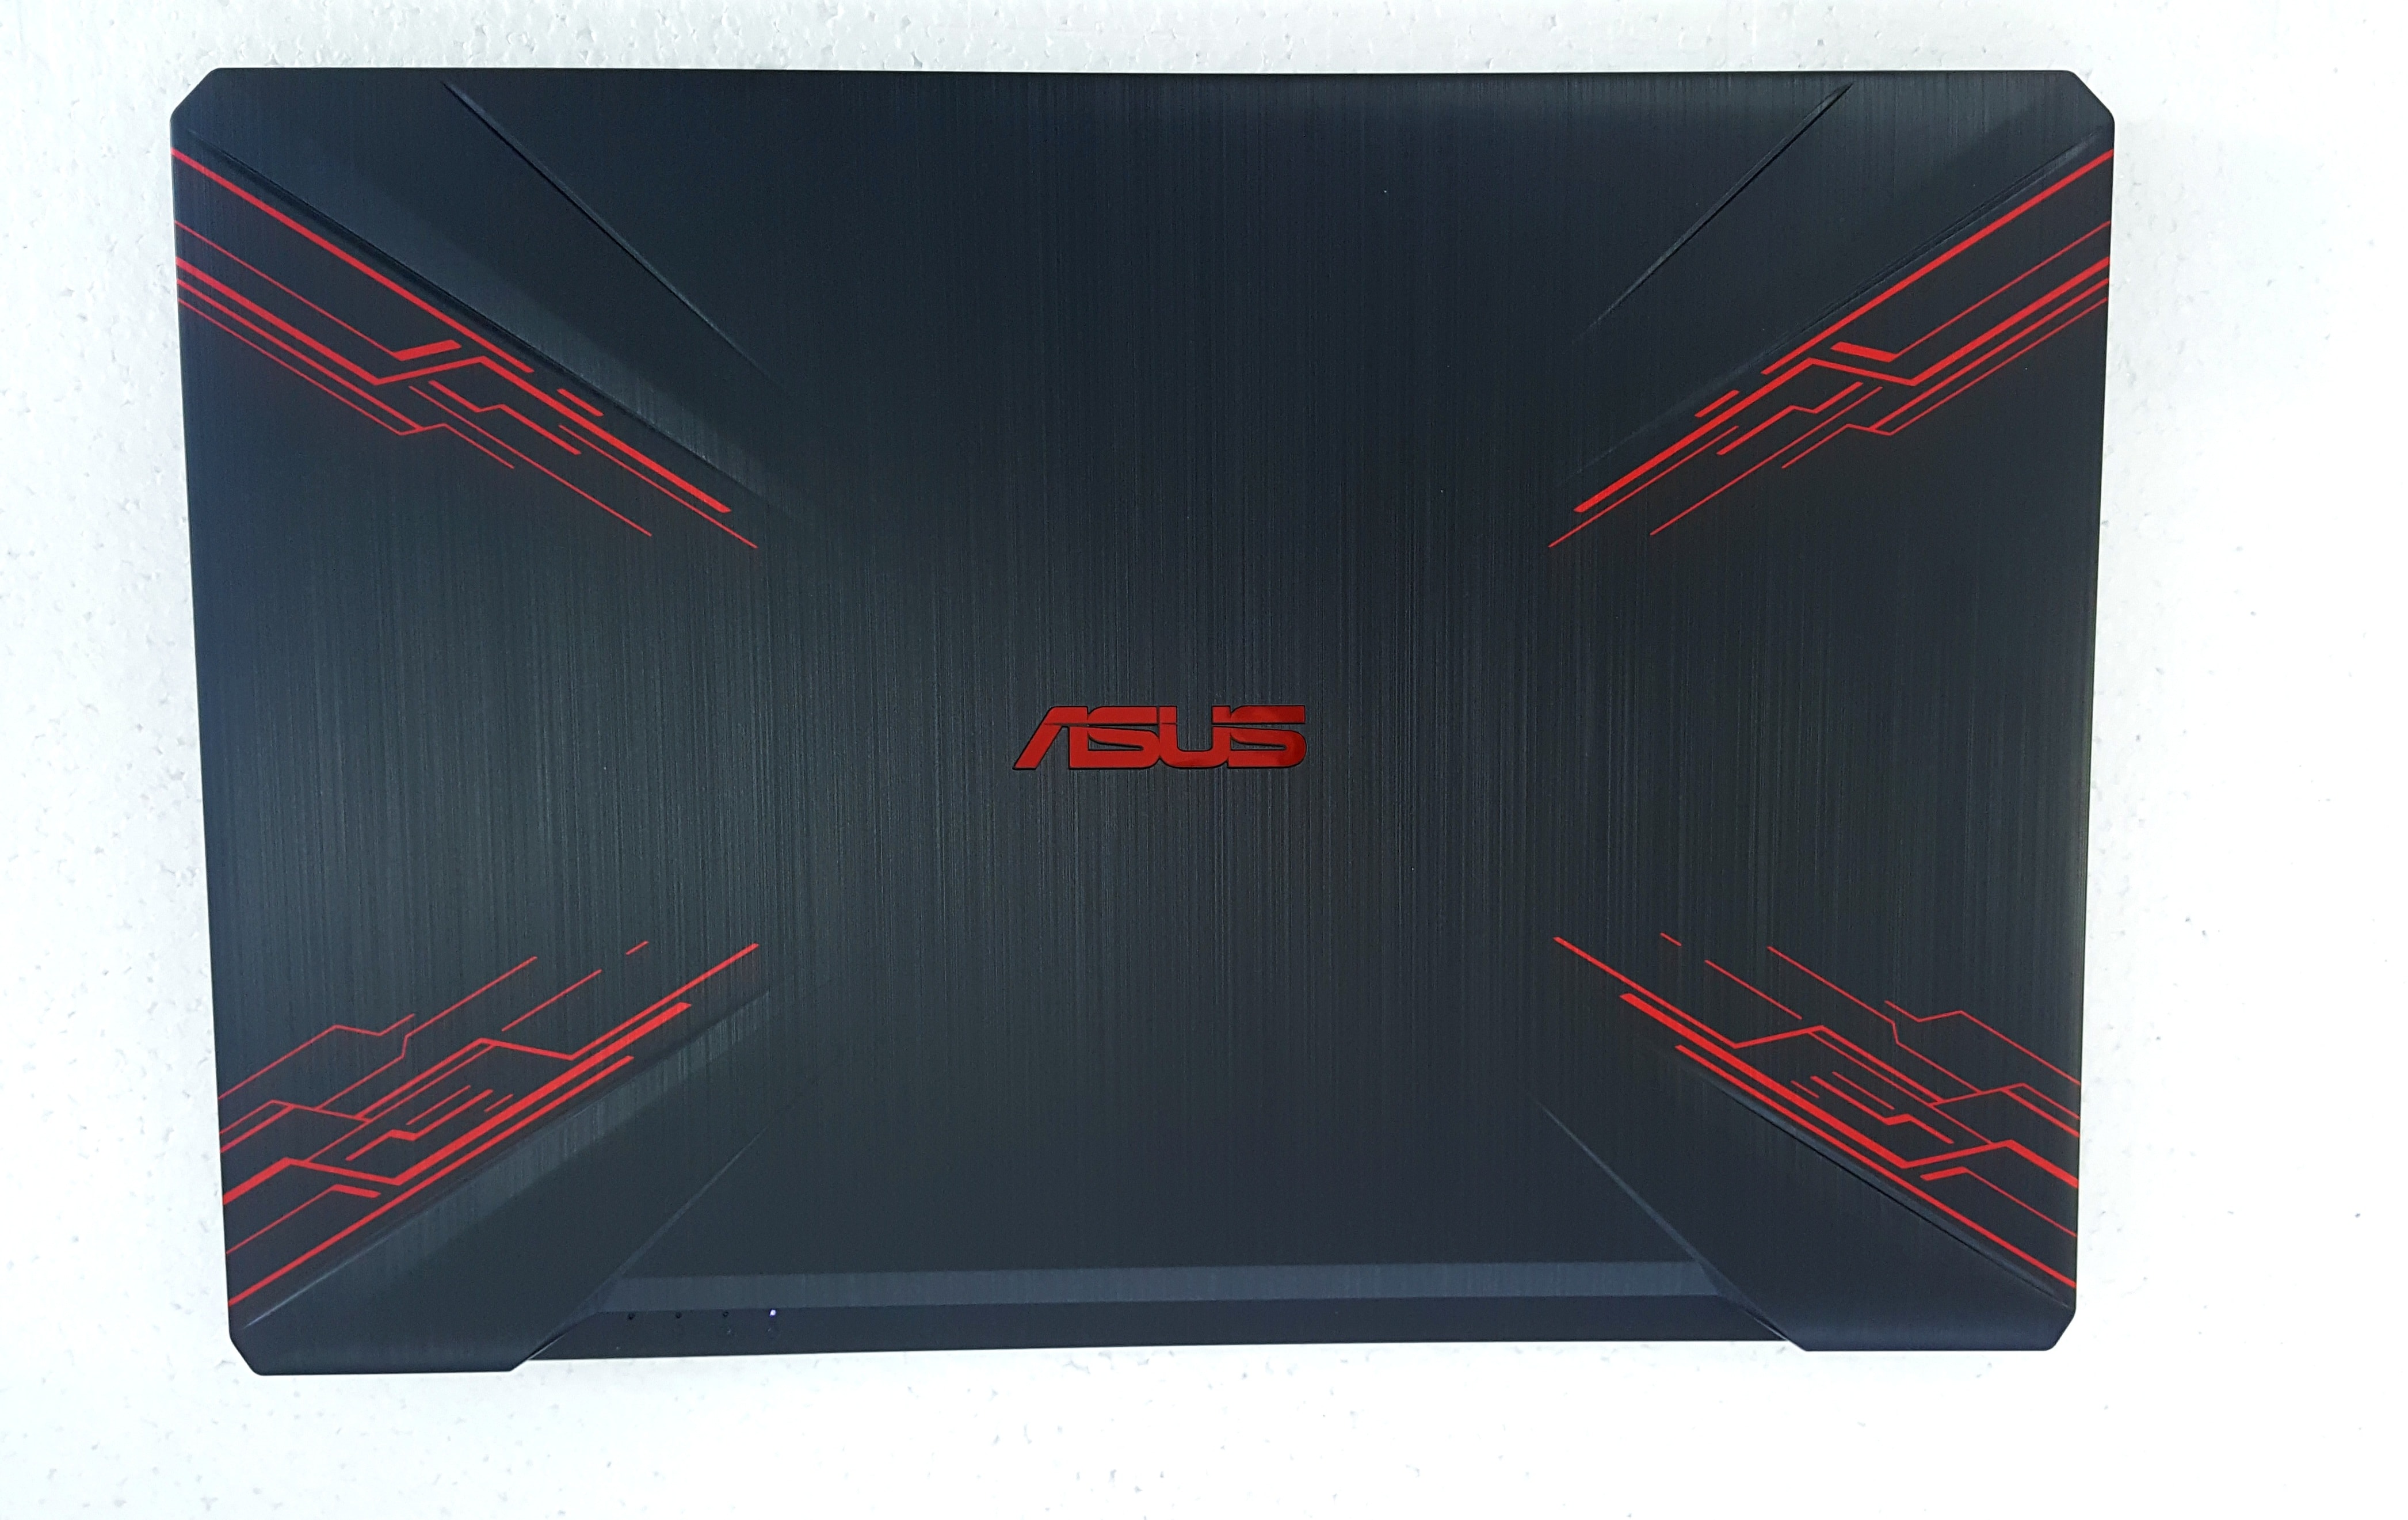 Đánh Giá Laptop Asus Tuf Gaming Fx504 Thiết Kế Mới-Cấu Hình Khủng